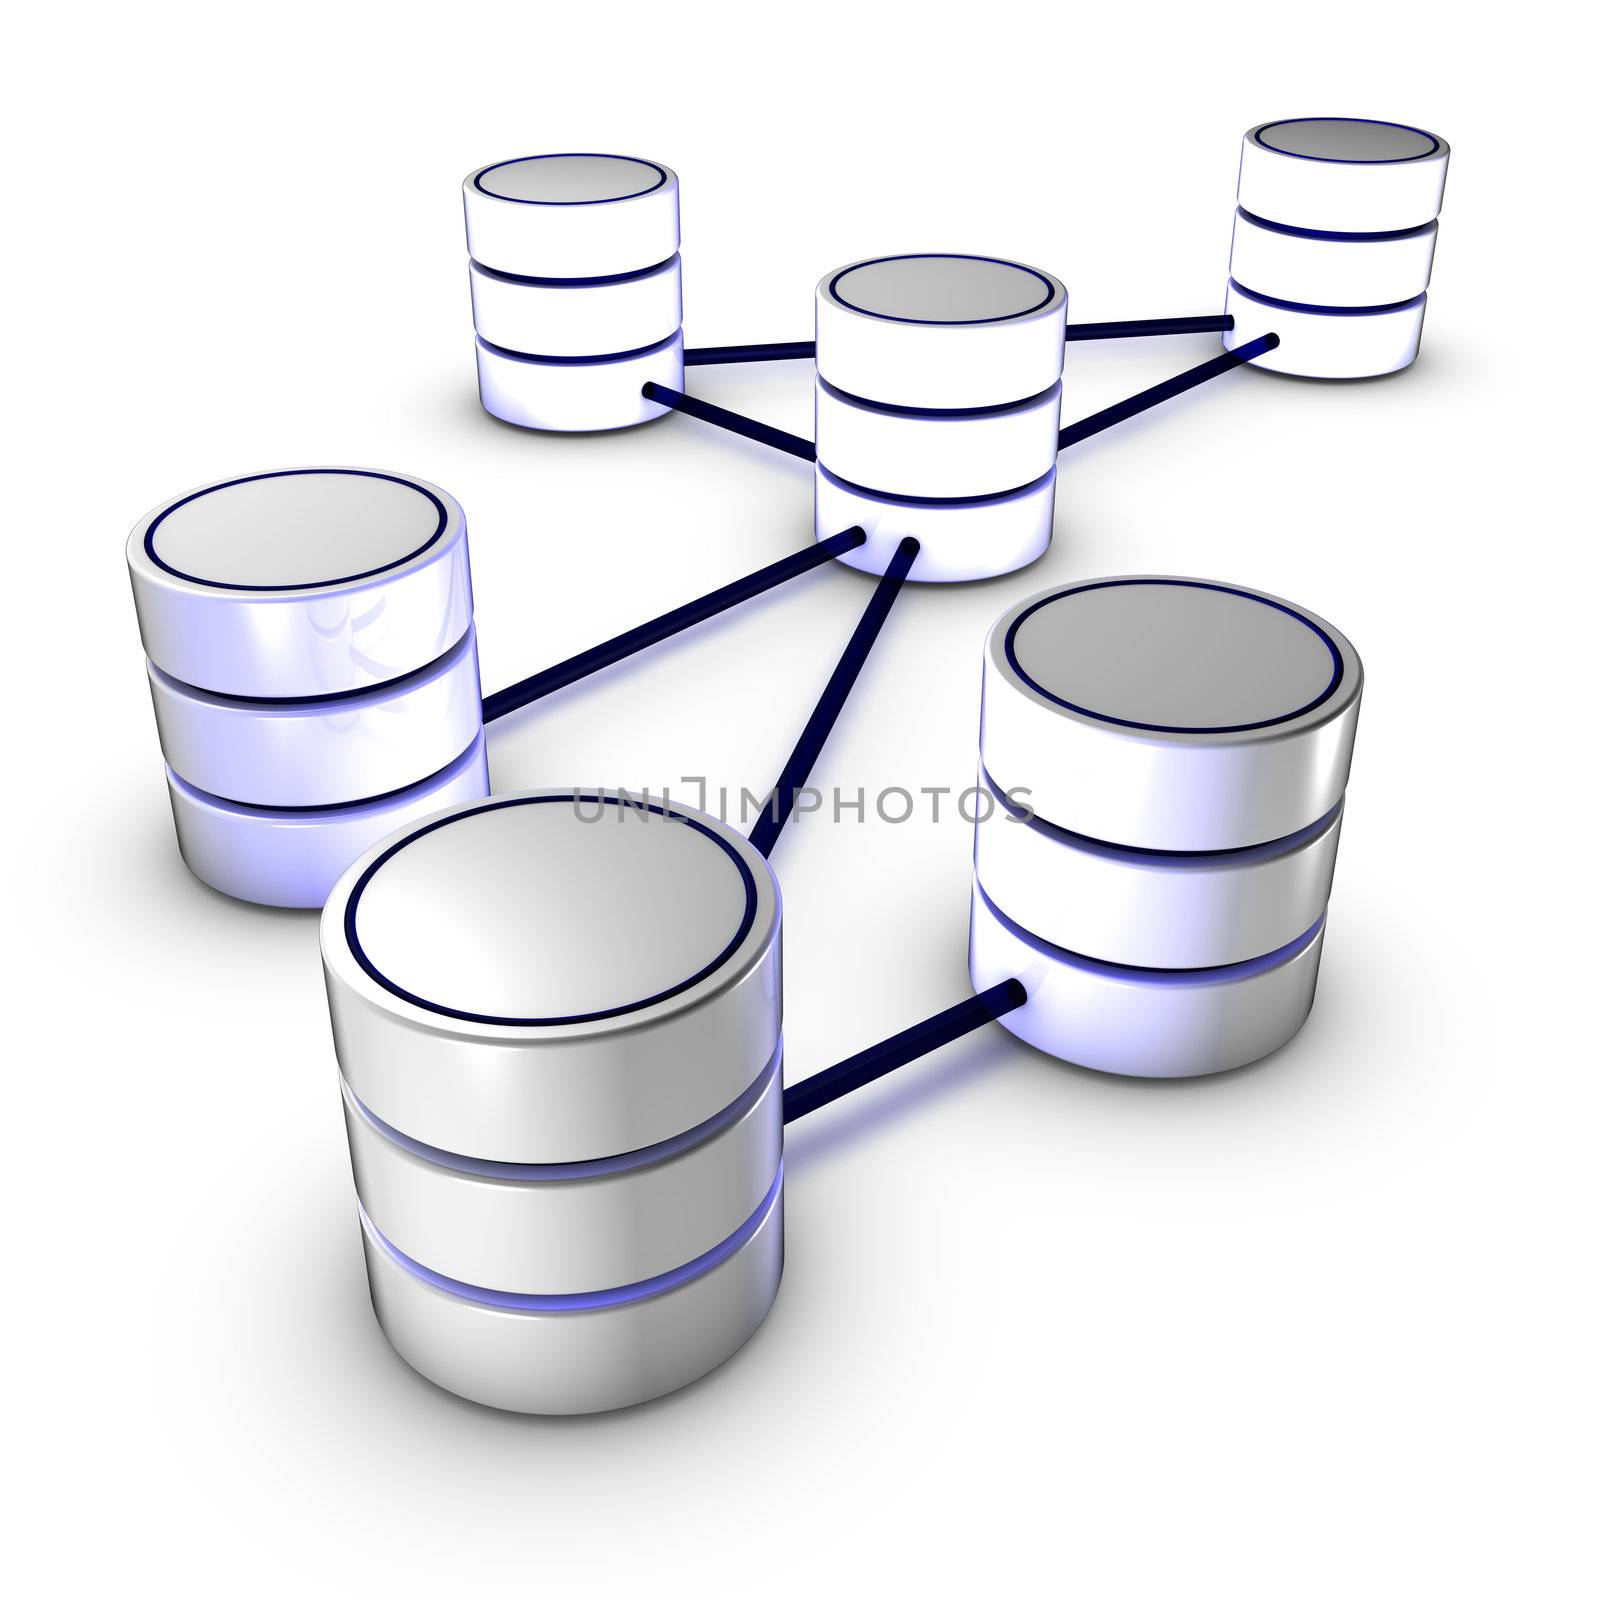 Database network by ytjo